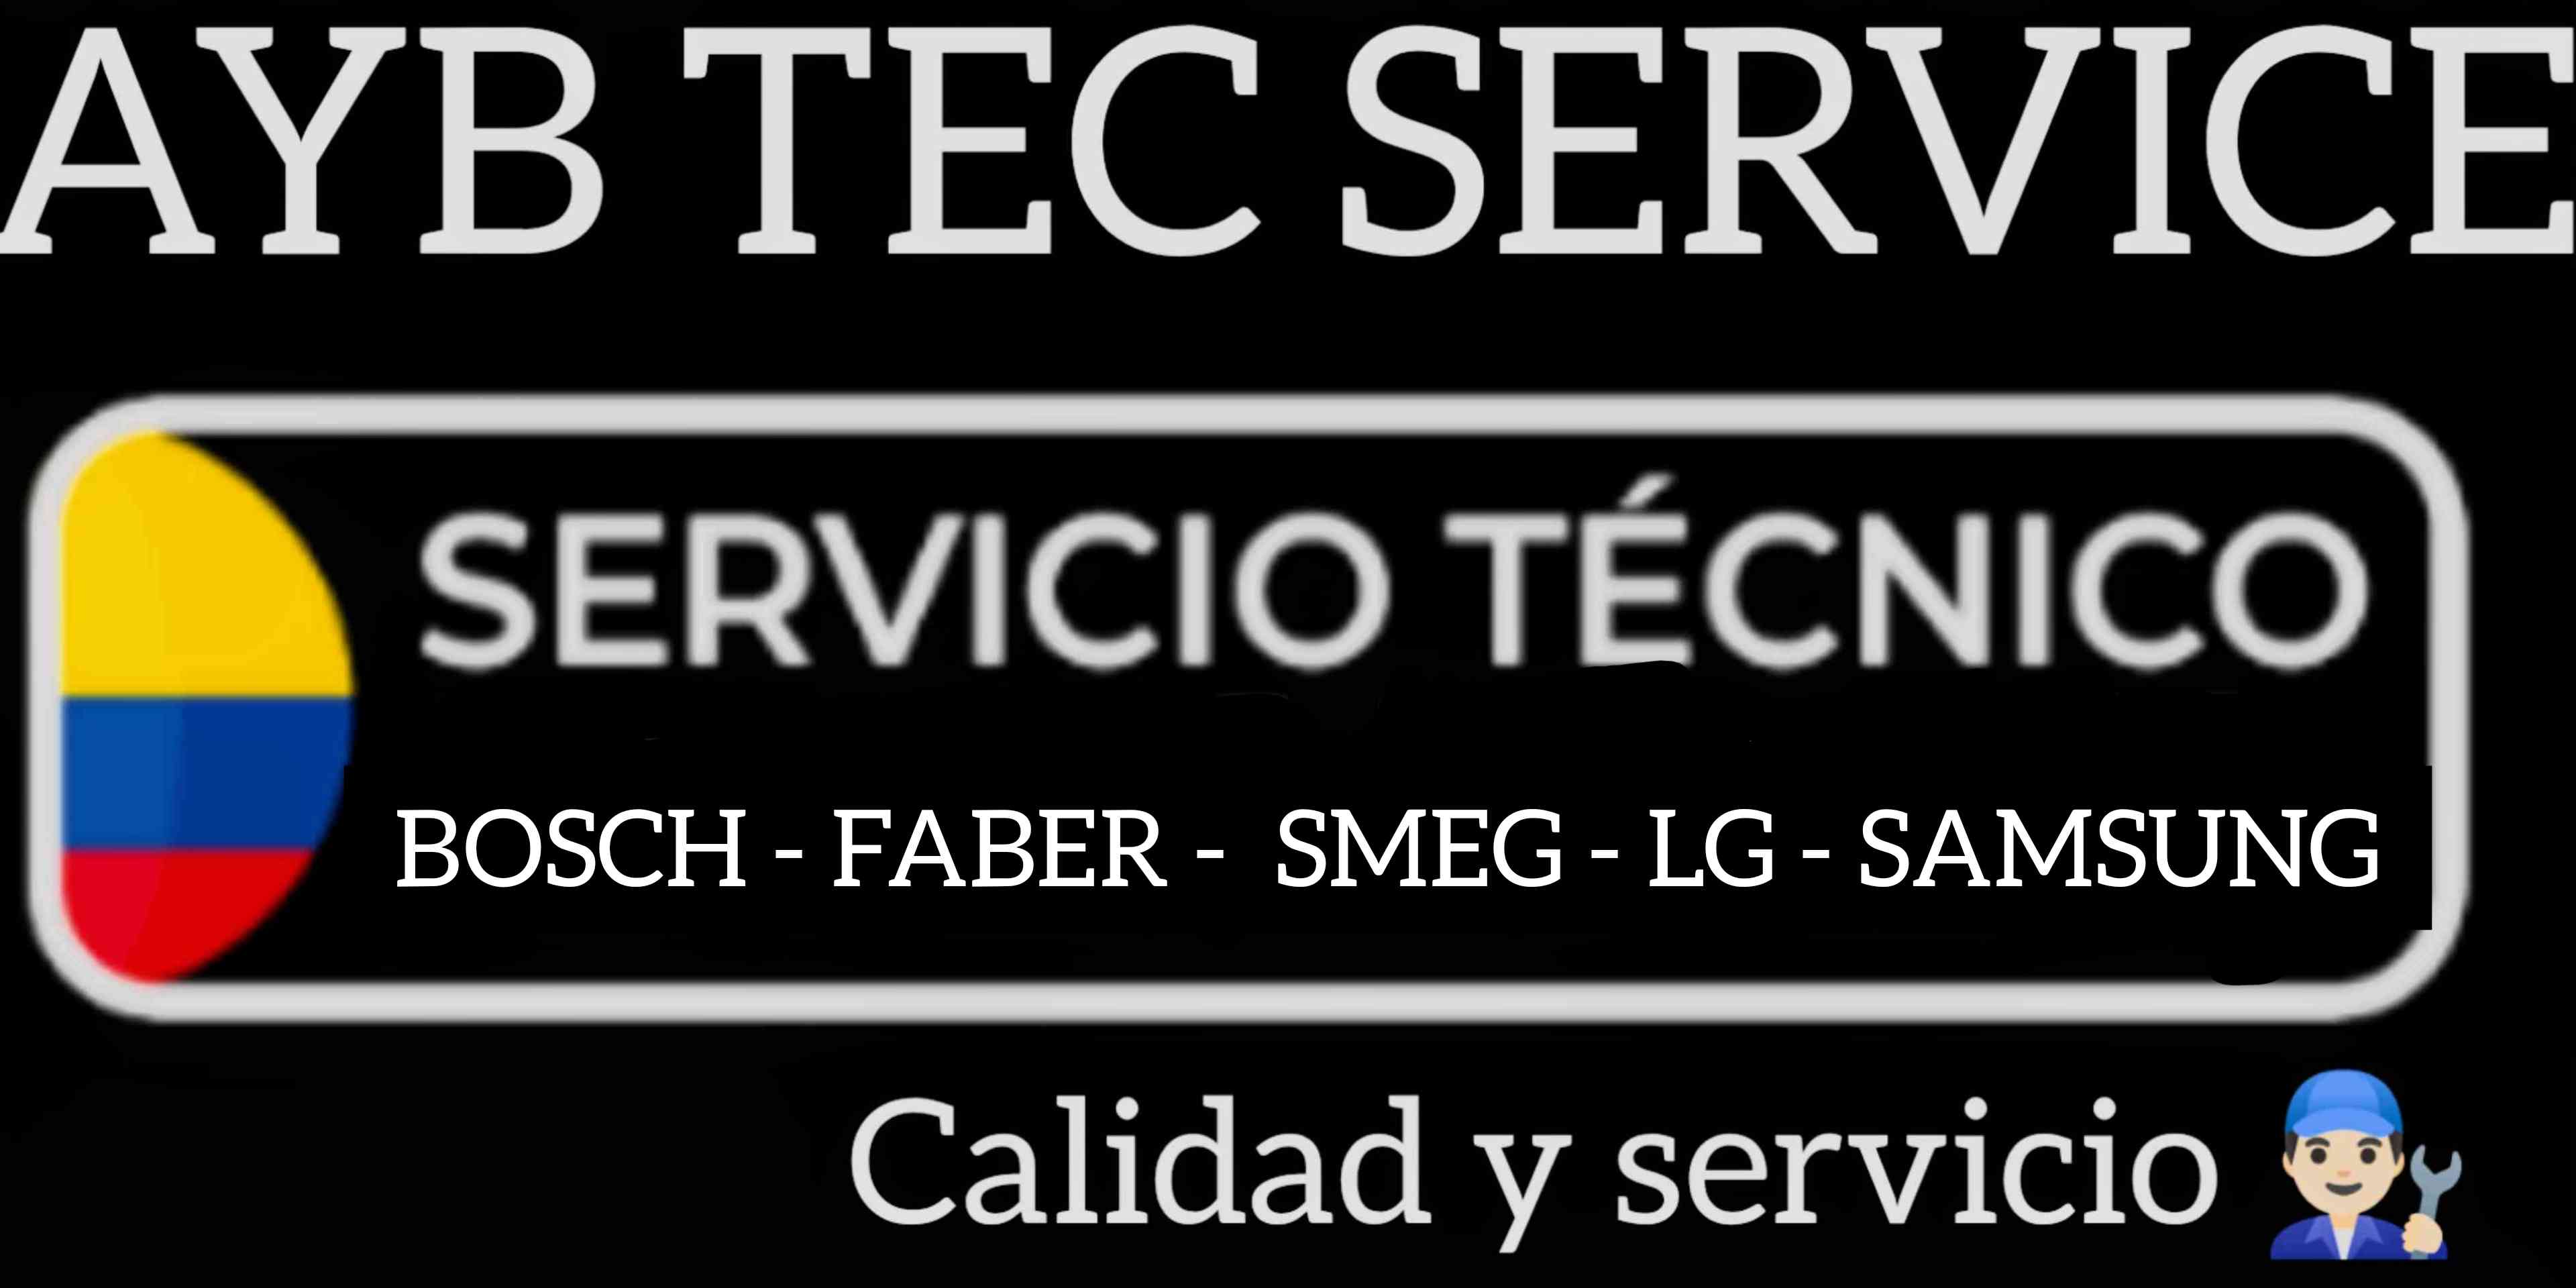 A&B TEC SERVICE SAS NIT 901247652-1